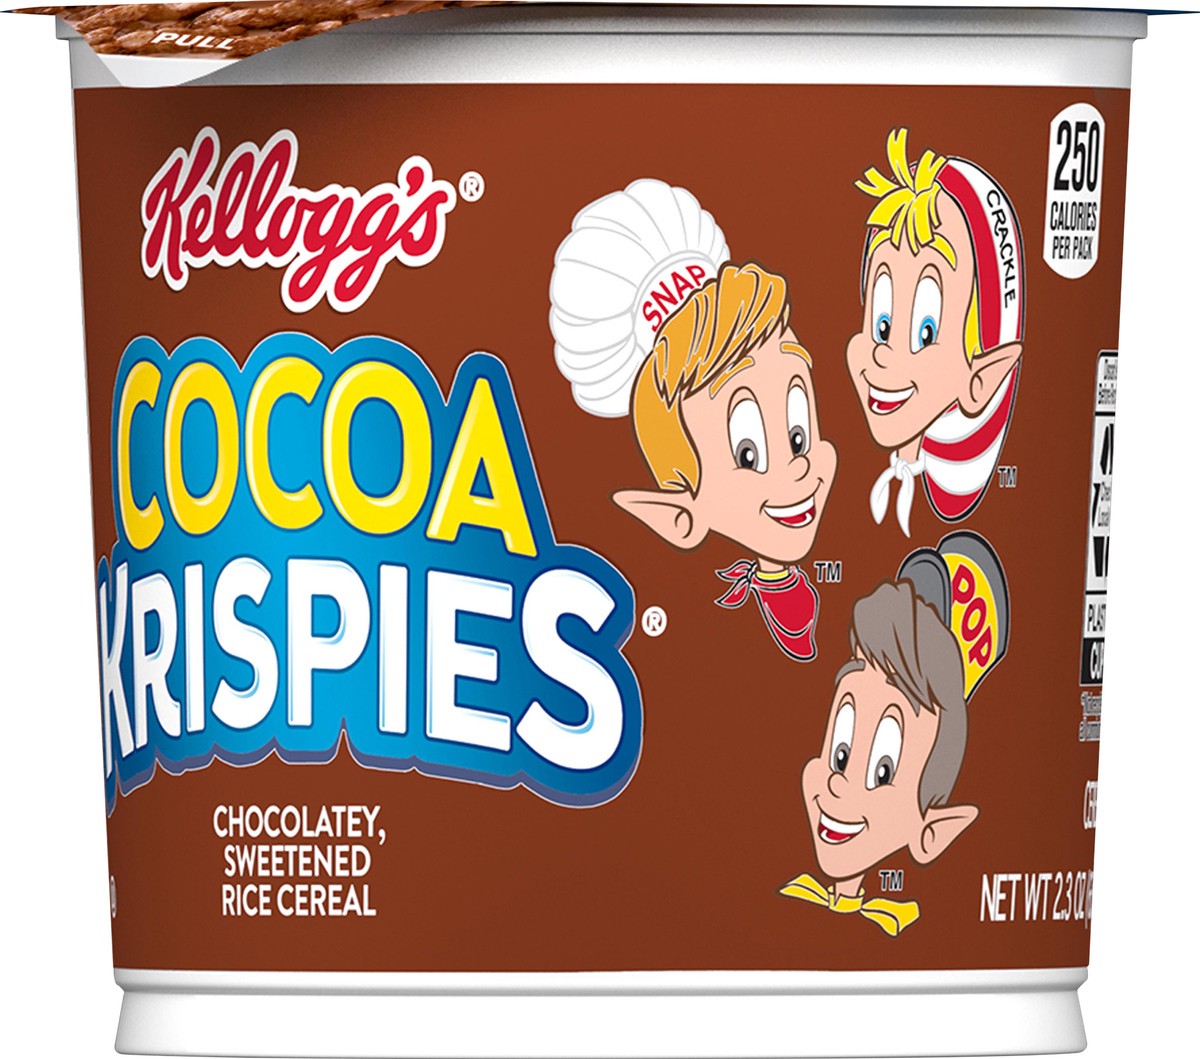 Kellogg's Cocoa Krispies Breakfast Cereal